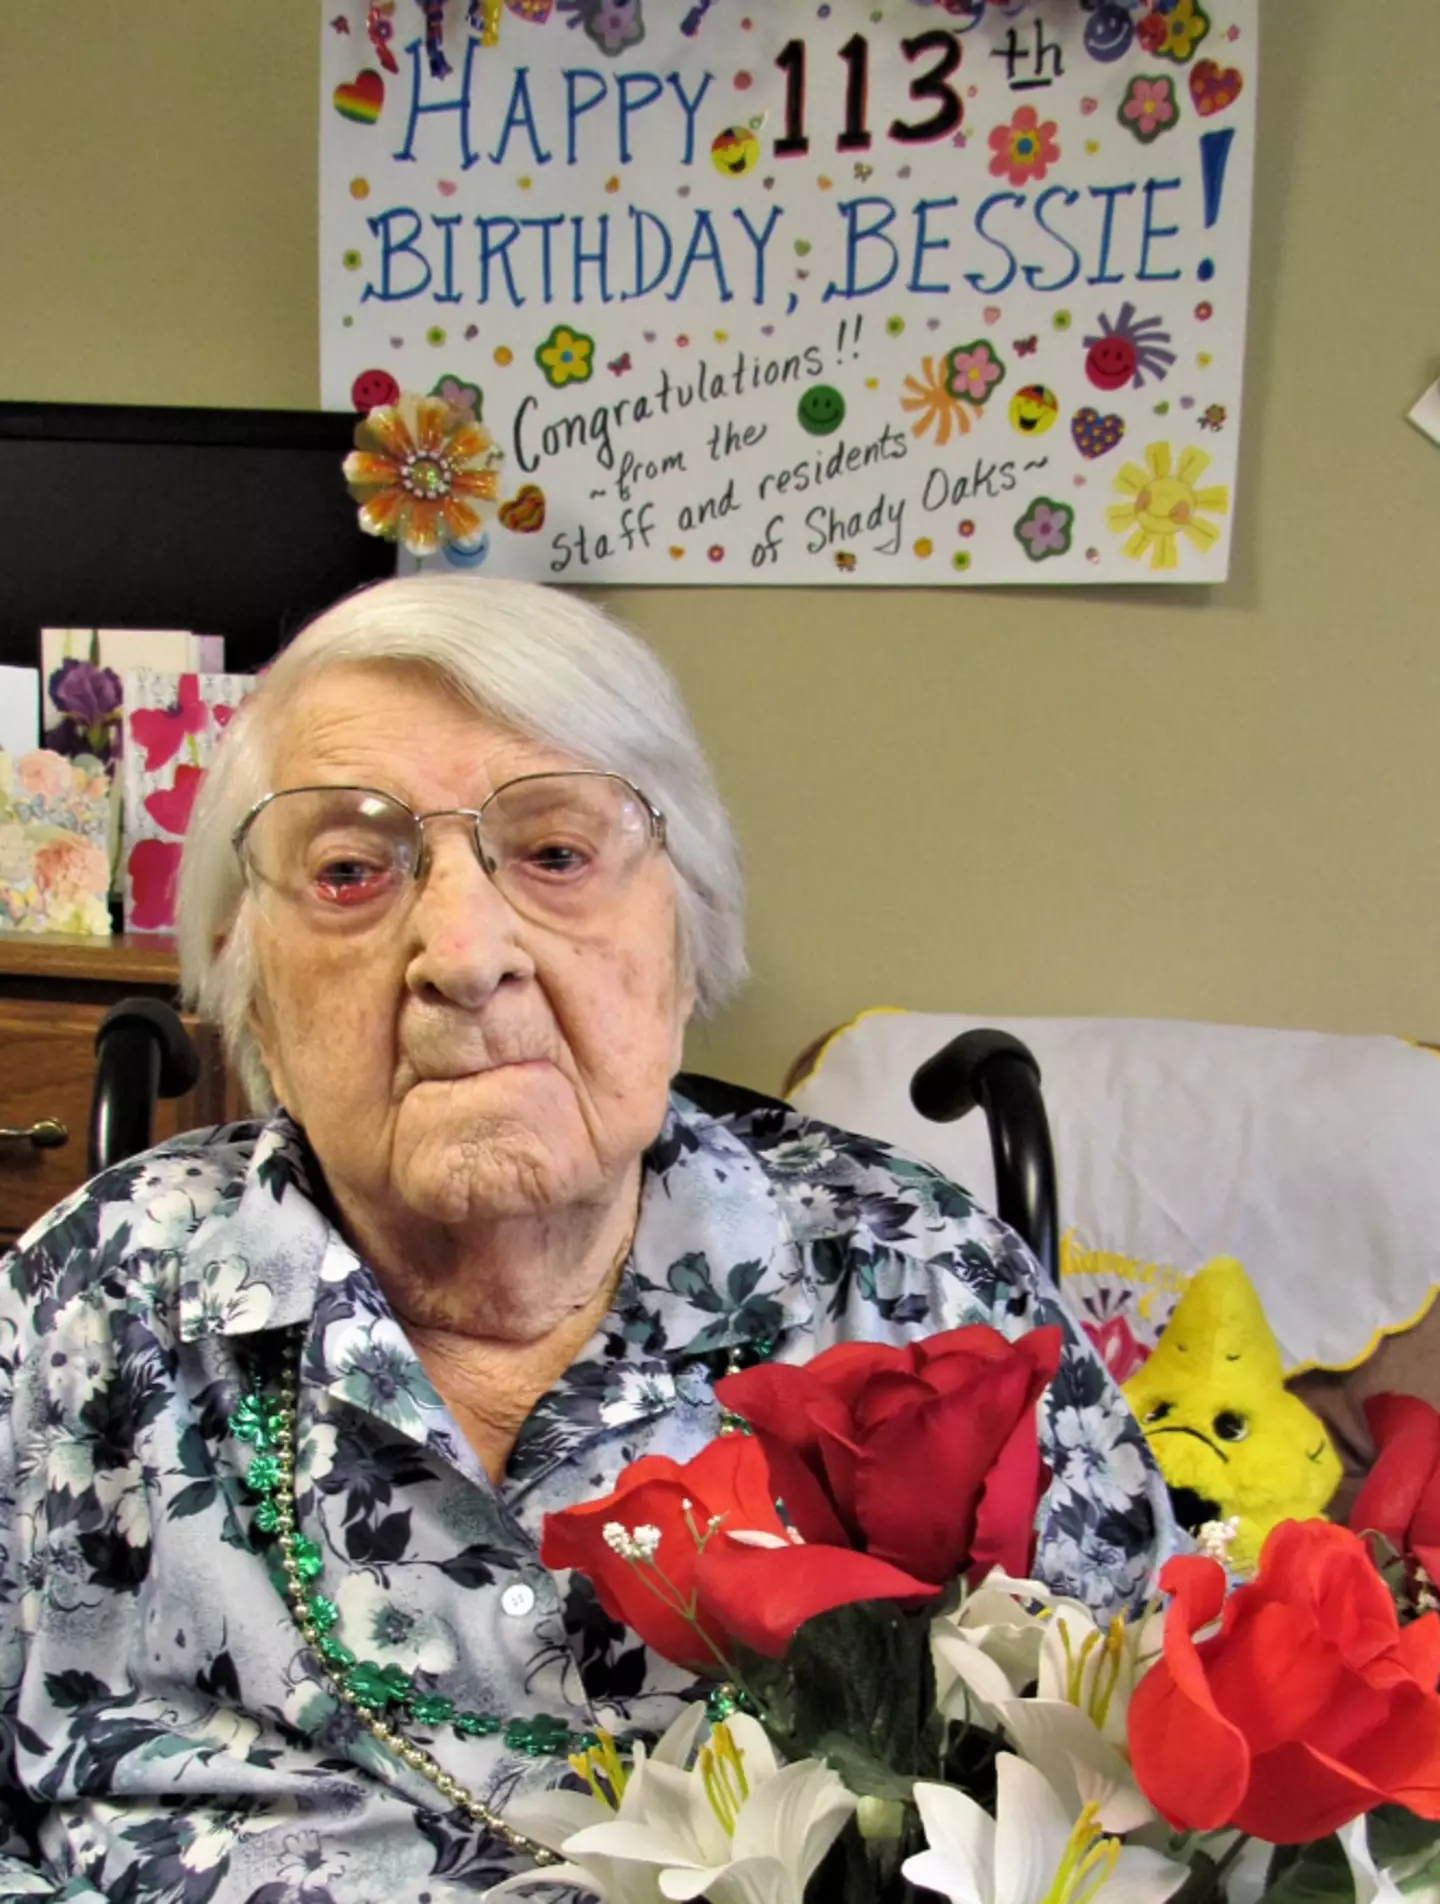 Bessie was 115 when she died.